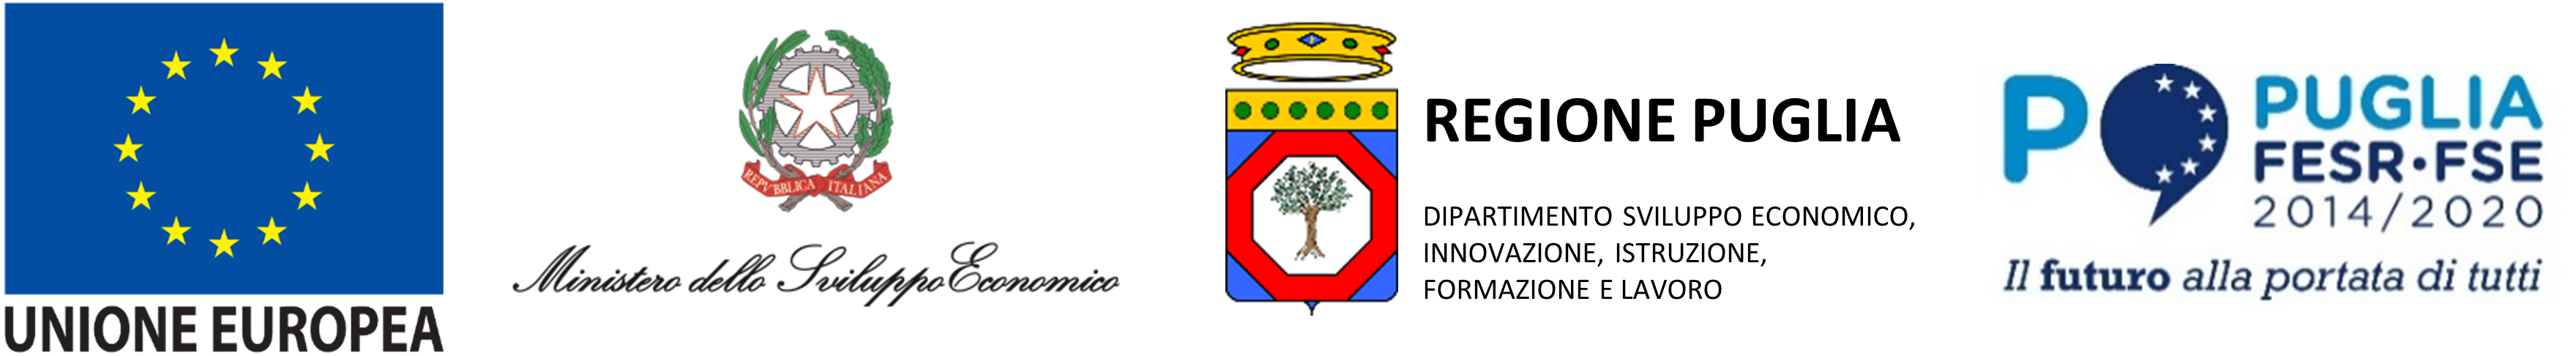 Logo Bando